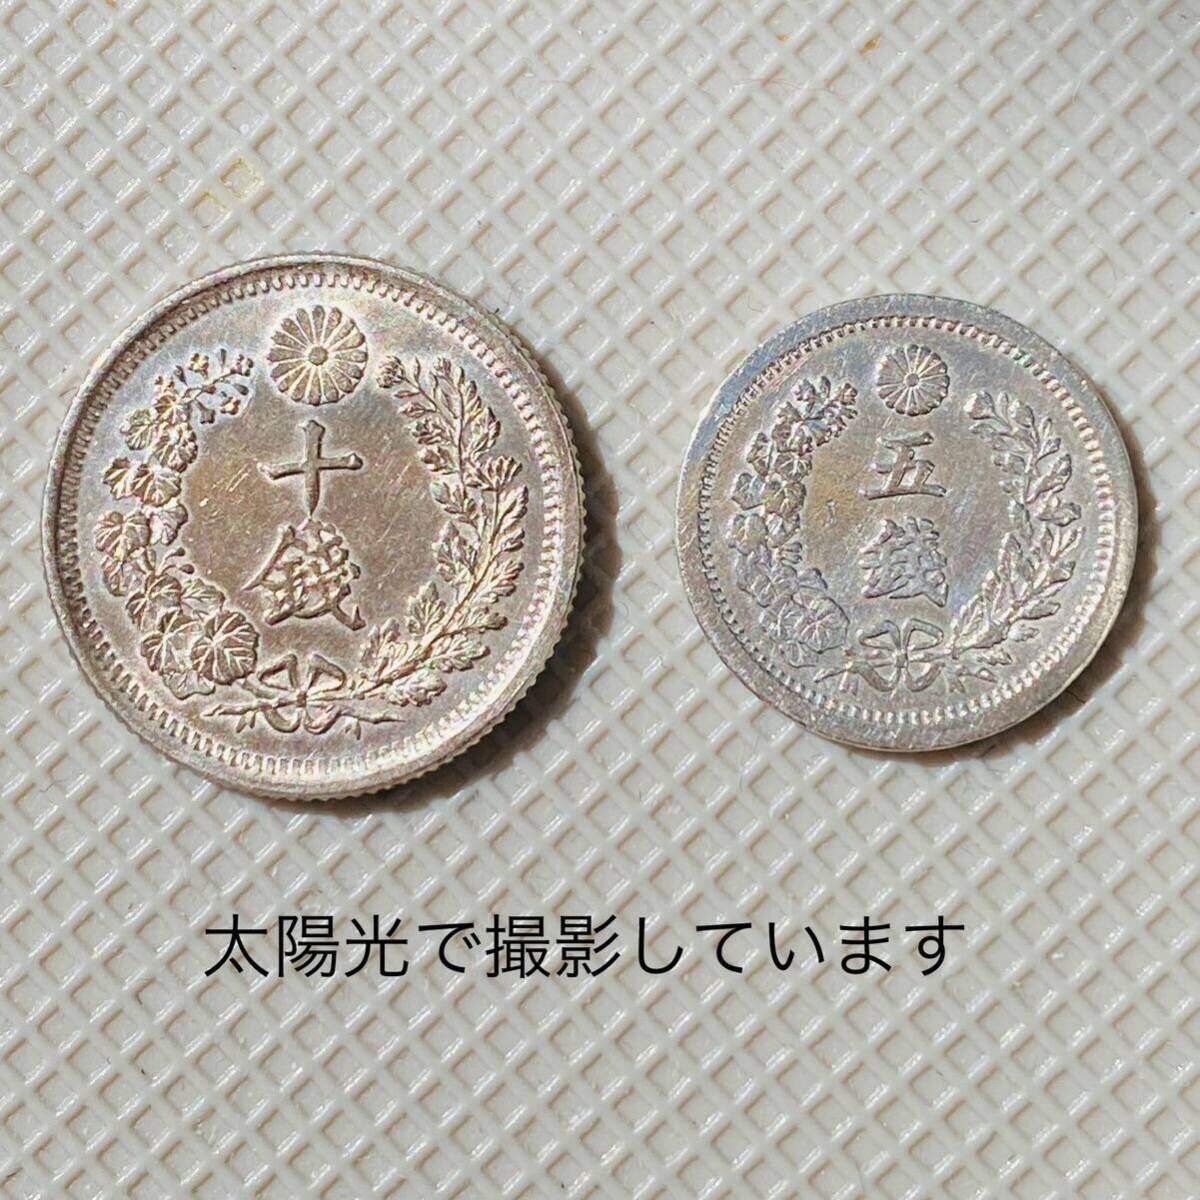 [ beautiful goods ] Meiji 8 year 10 sen, Meiji 6 year 5 sen together 